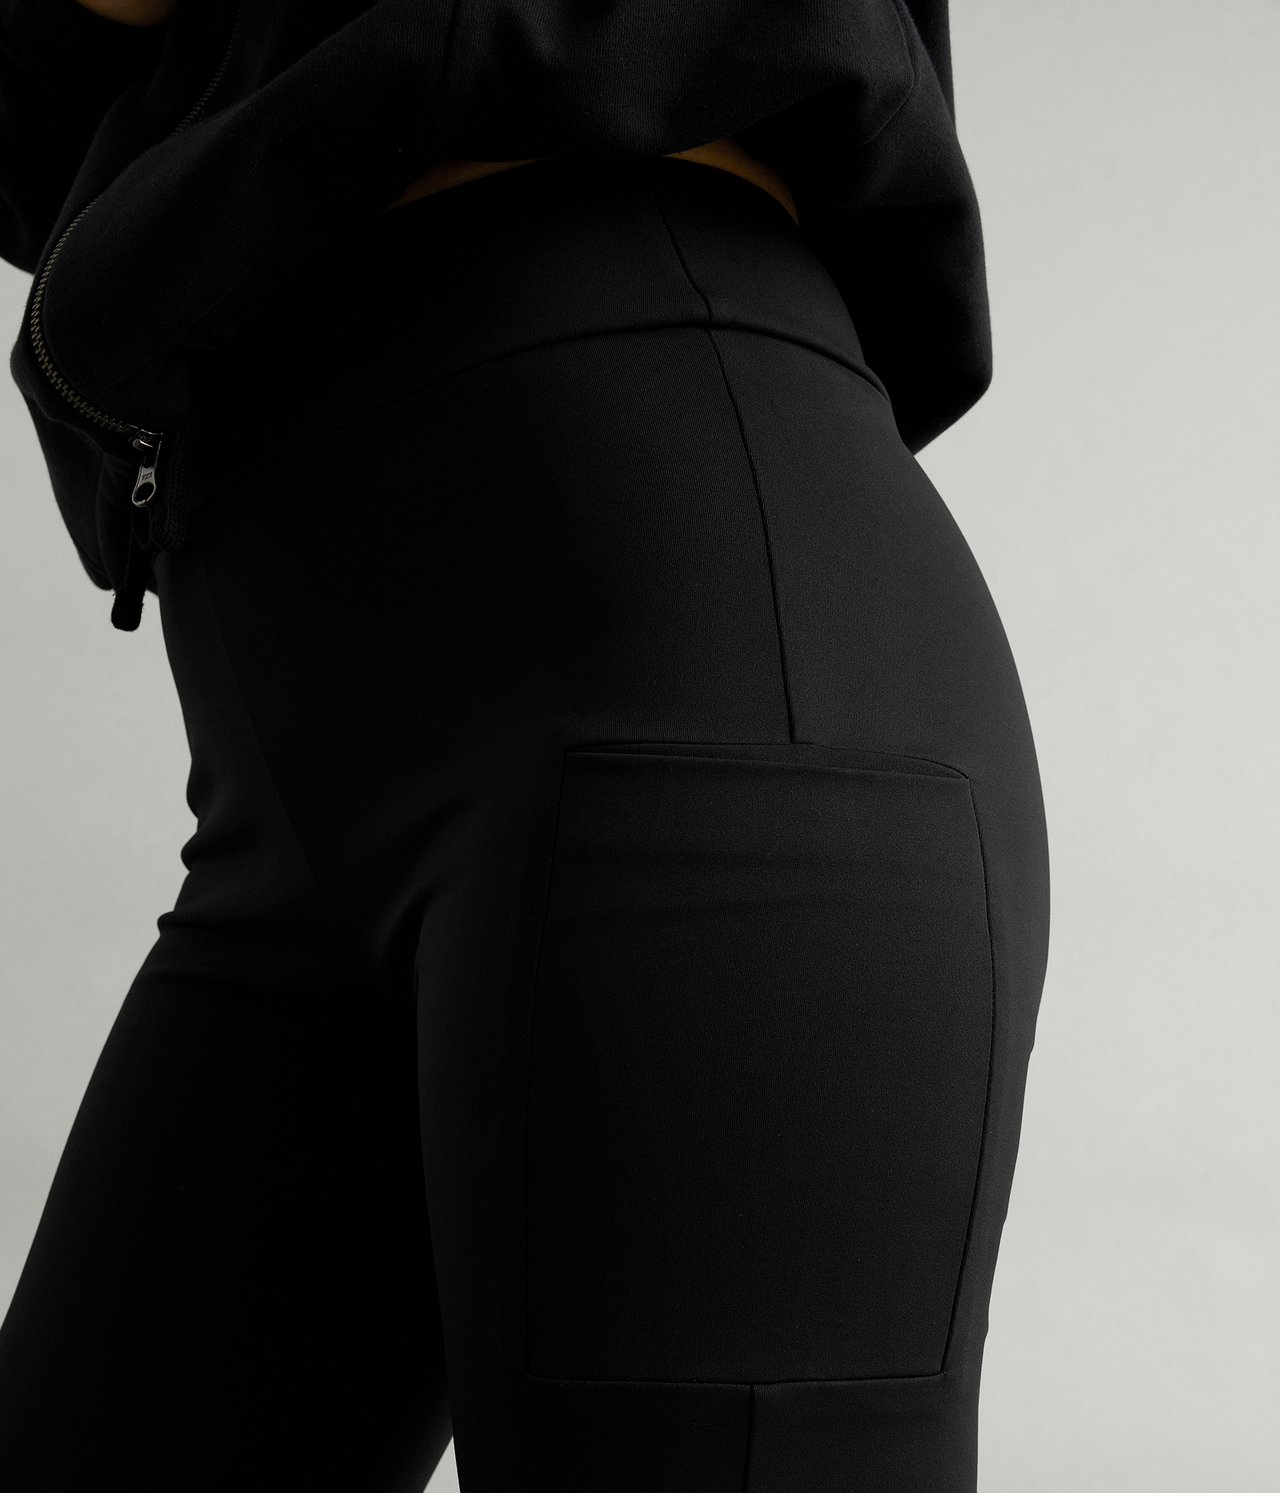 Spodnie do ćwiczeń - Czarne - 2